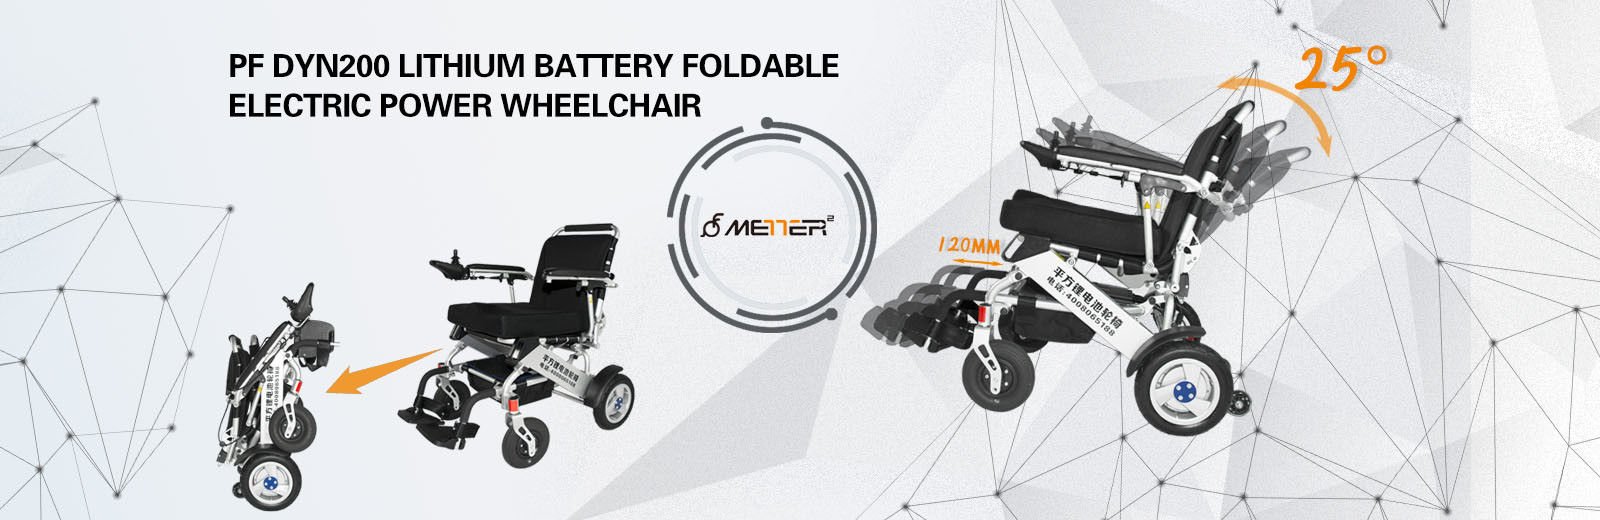 携帯用折り畳み式の電動車椅子